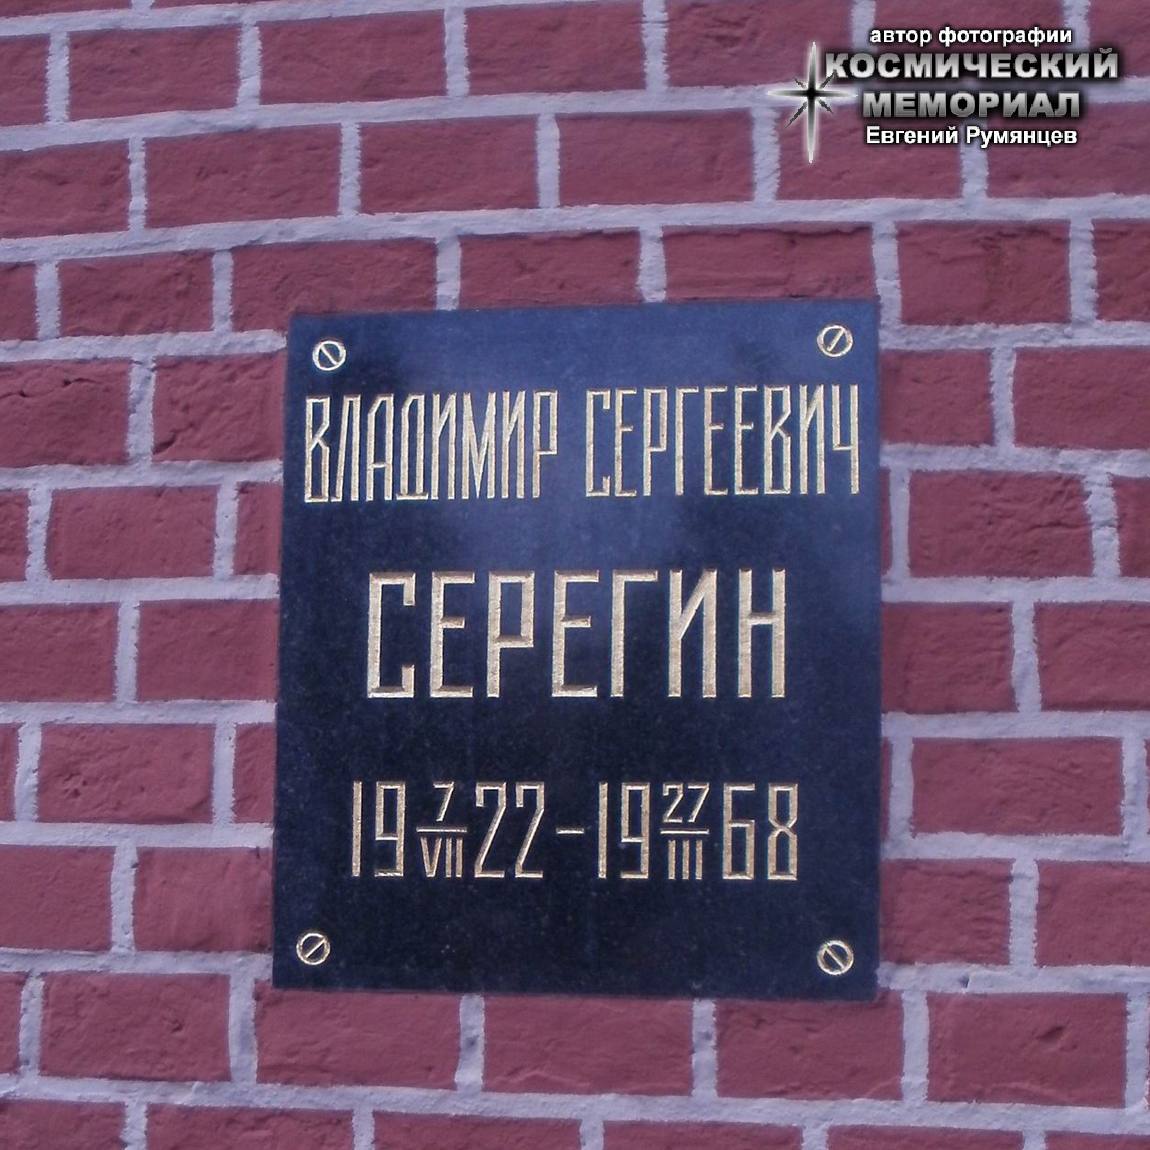 г. Москва, Красная площадь, Кремлёвская стена. Захоронение урны с прахом В.С. Серёгина после реставрации Кремля (июнь 2016 года)